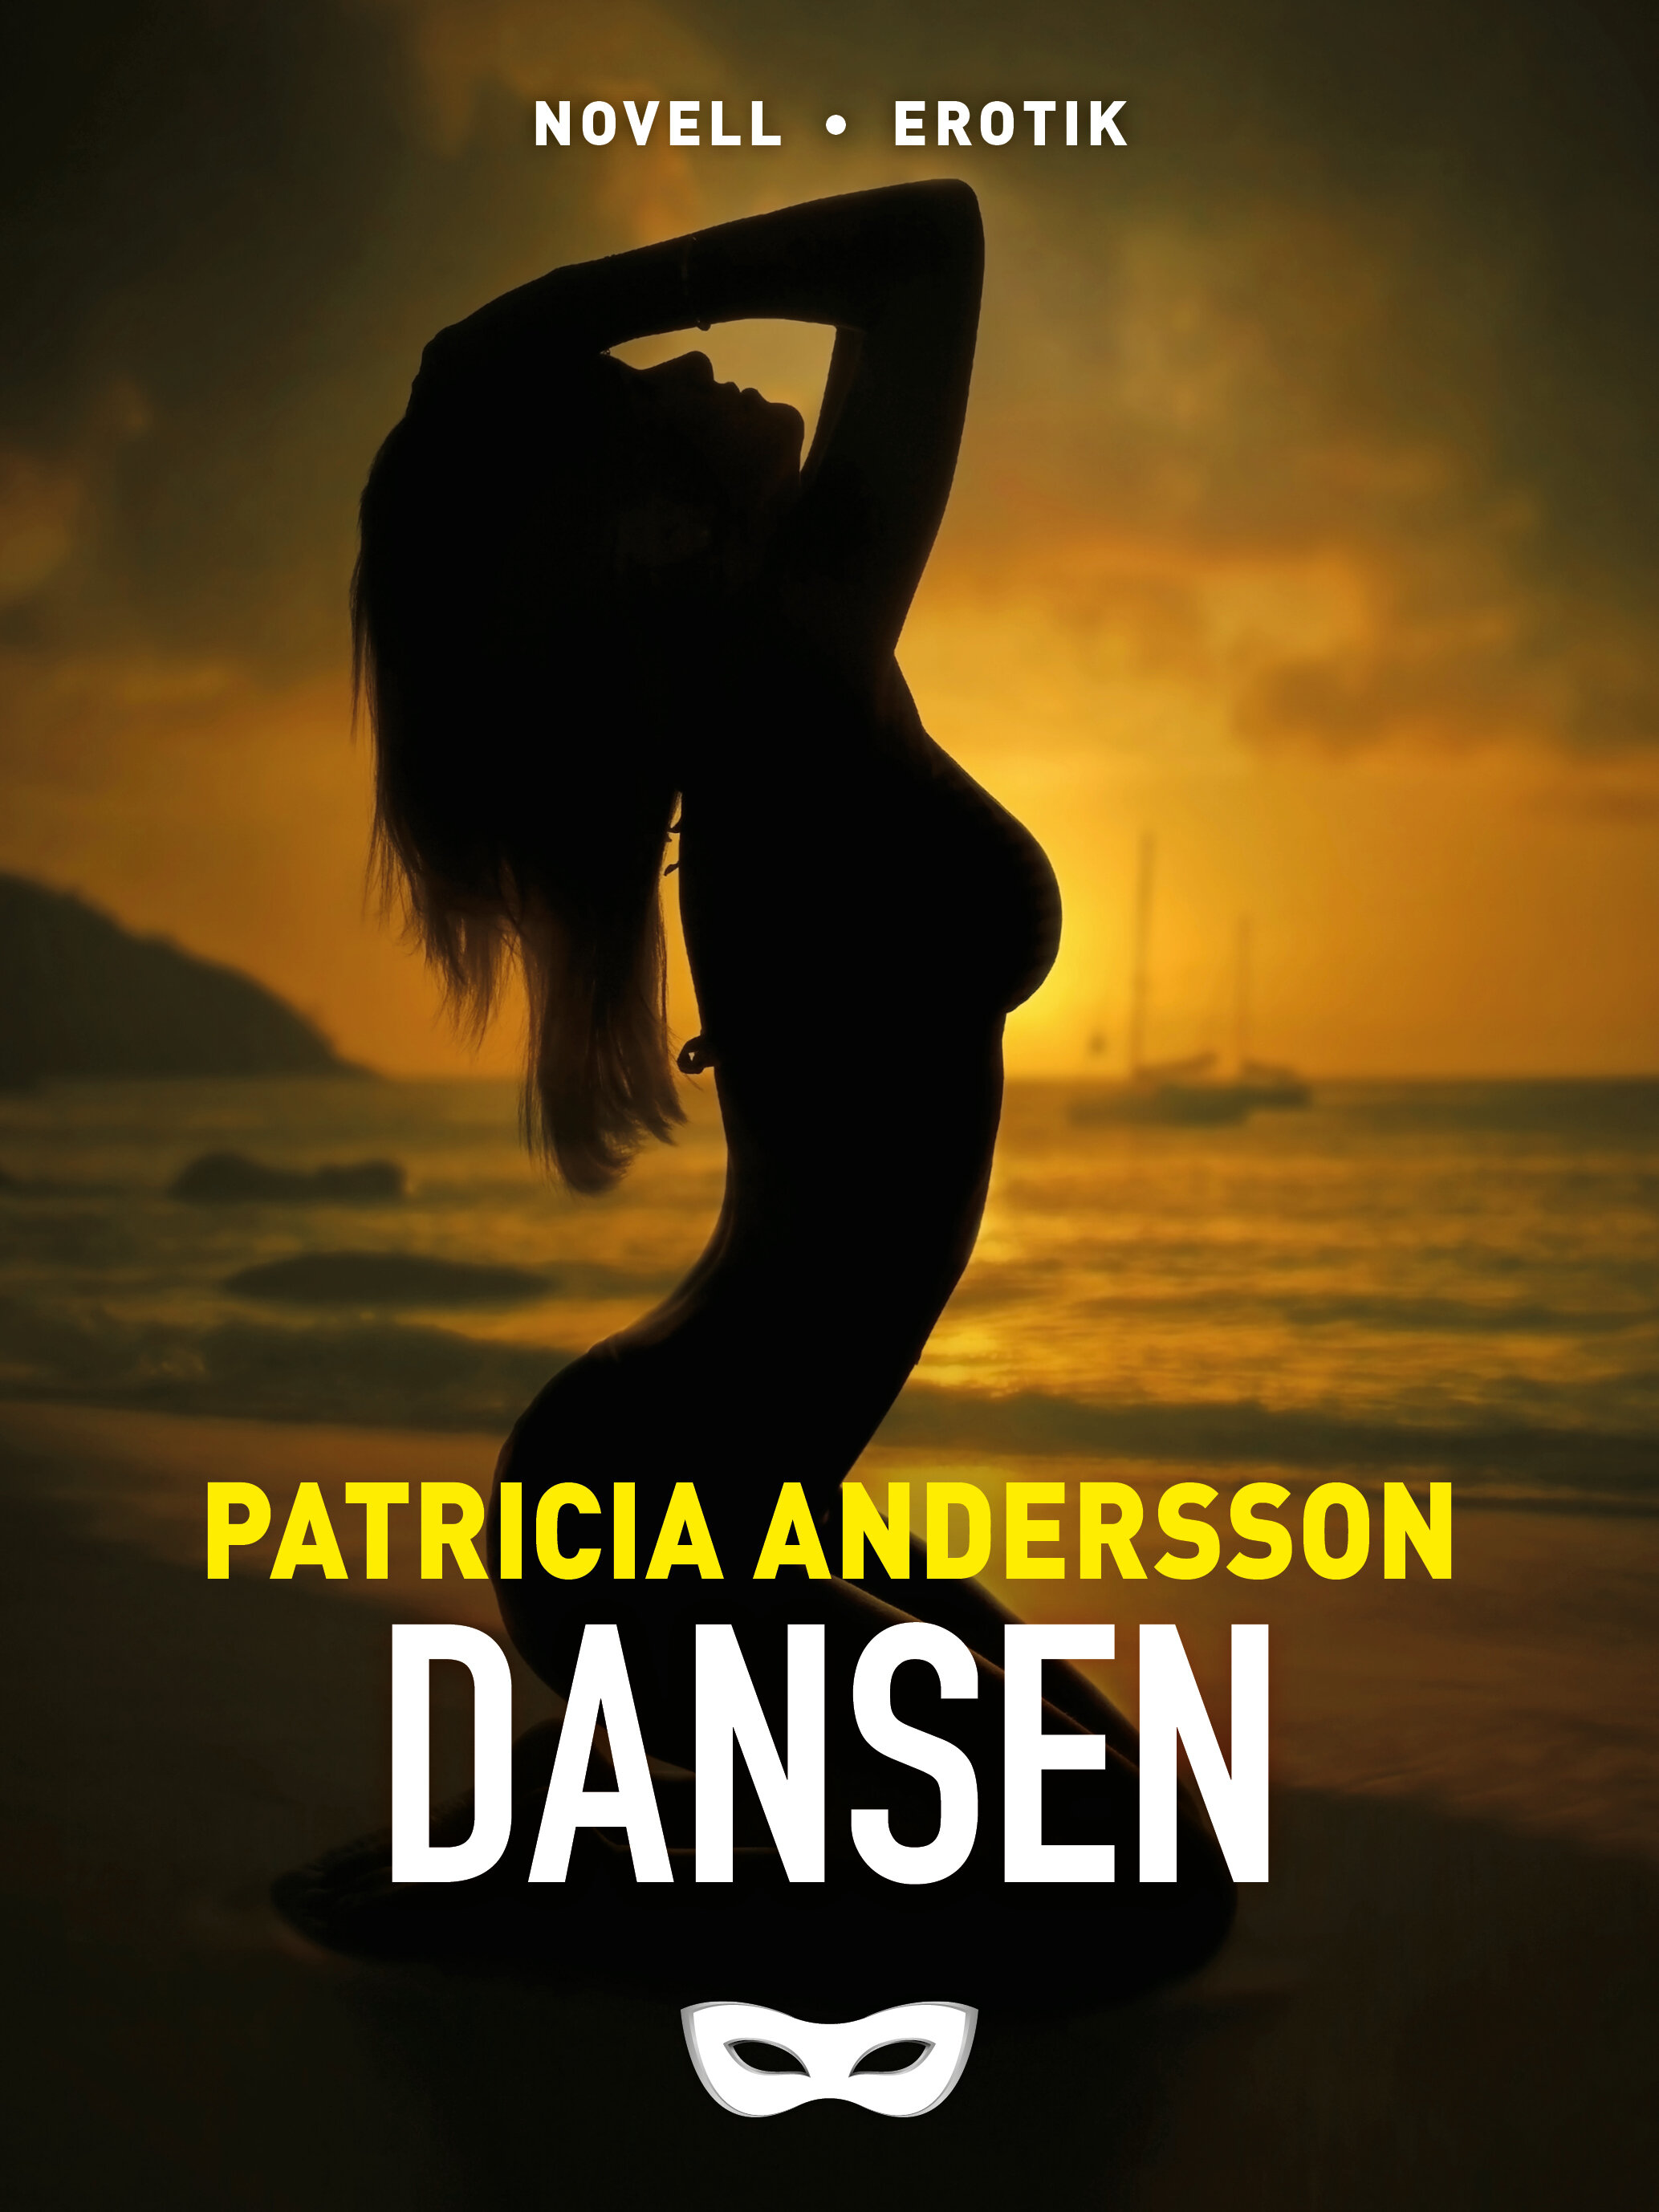 DAN_Dansen_Patricia Andersson_omslag_e-nov.jpg